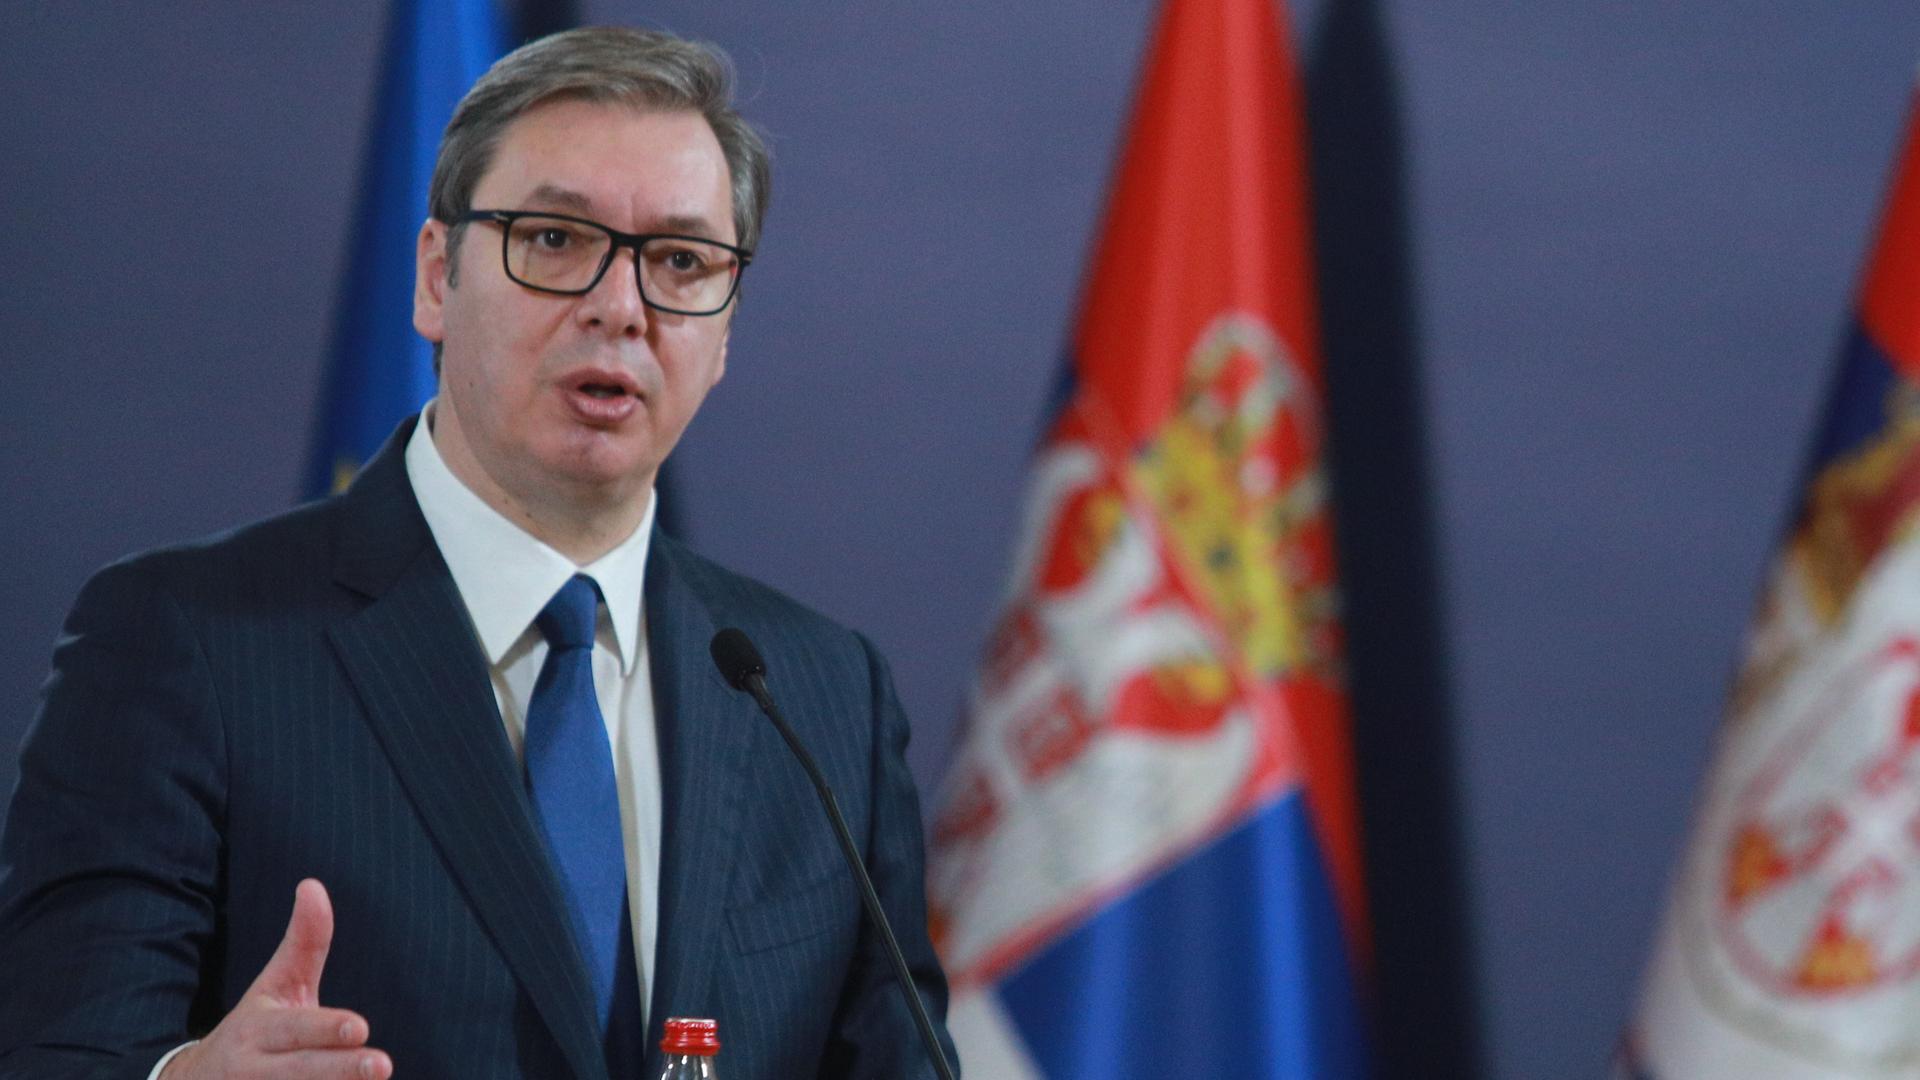 Serbien - Präsident Vucic tritt von Parteivorsitz zurück - Vertrauter wird Nachfolger